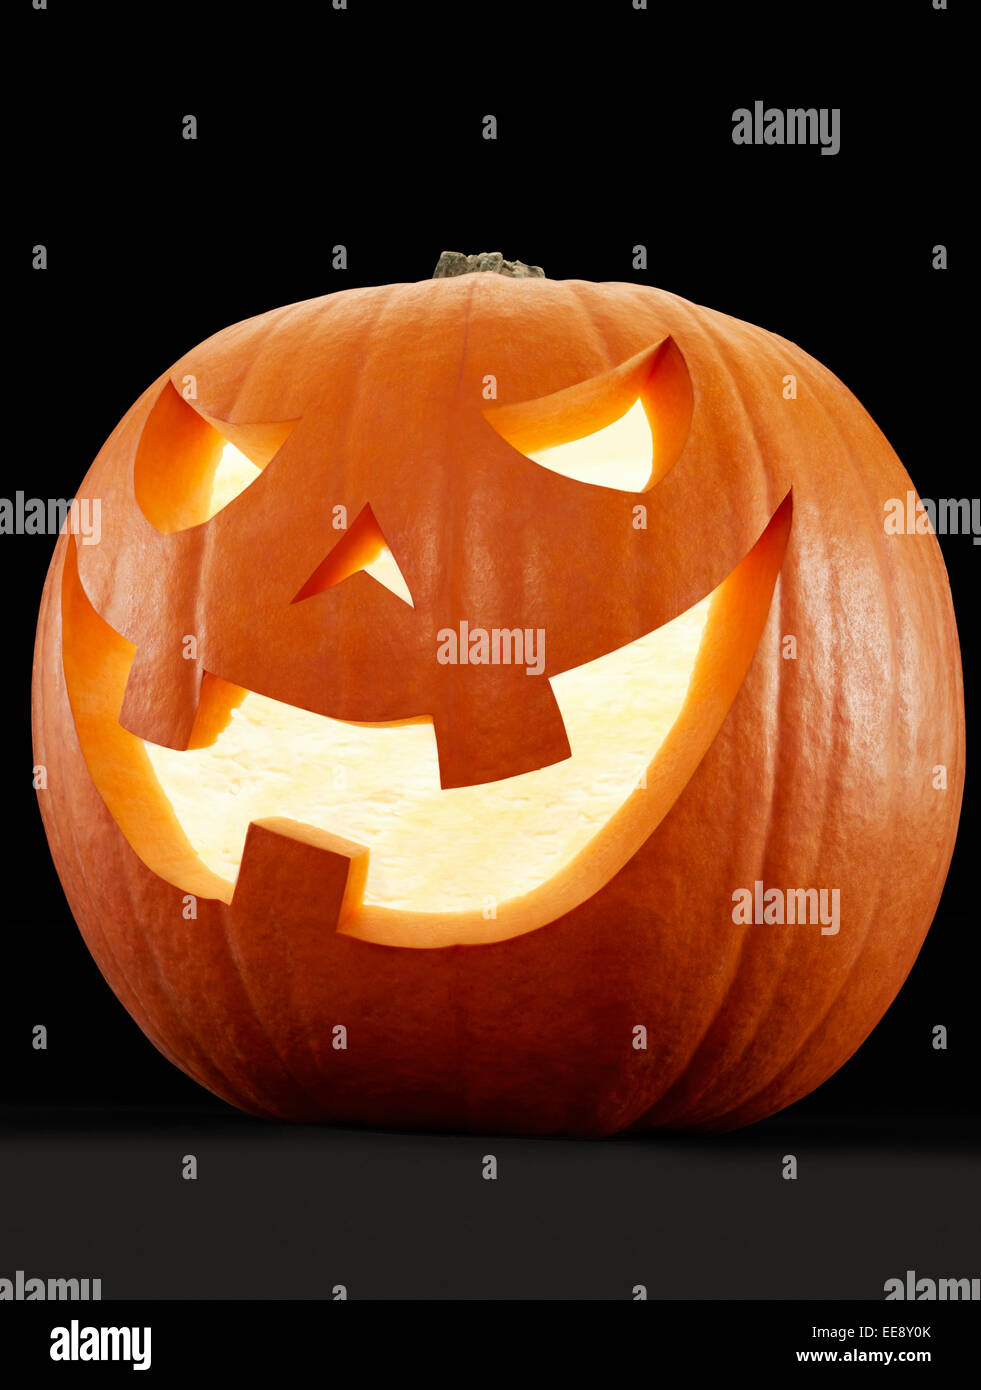 Halloween pumpkin on black Stock Photo